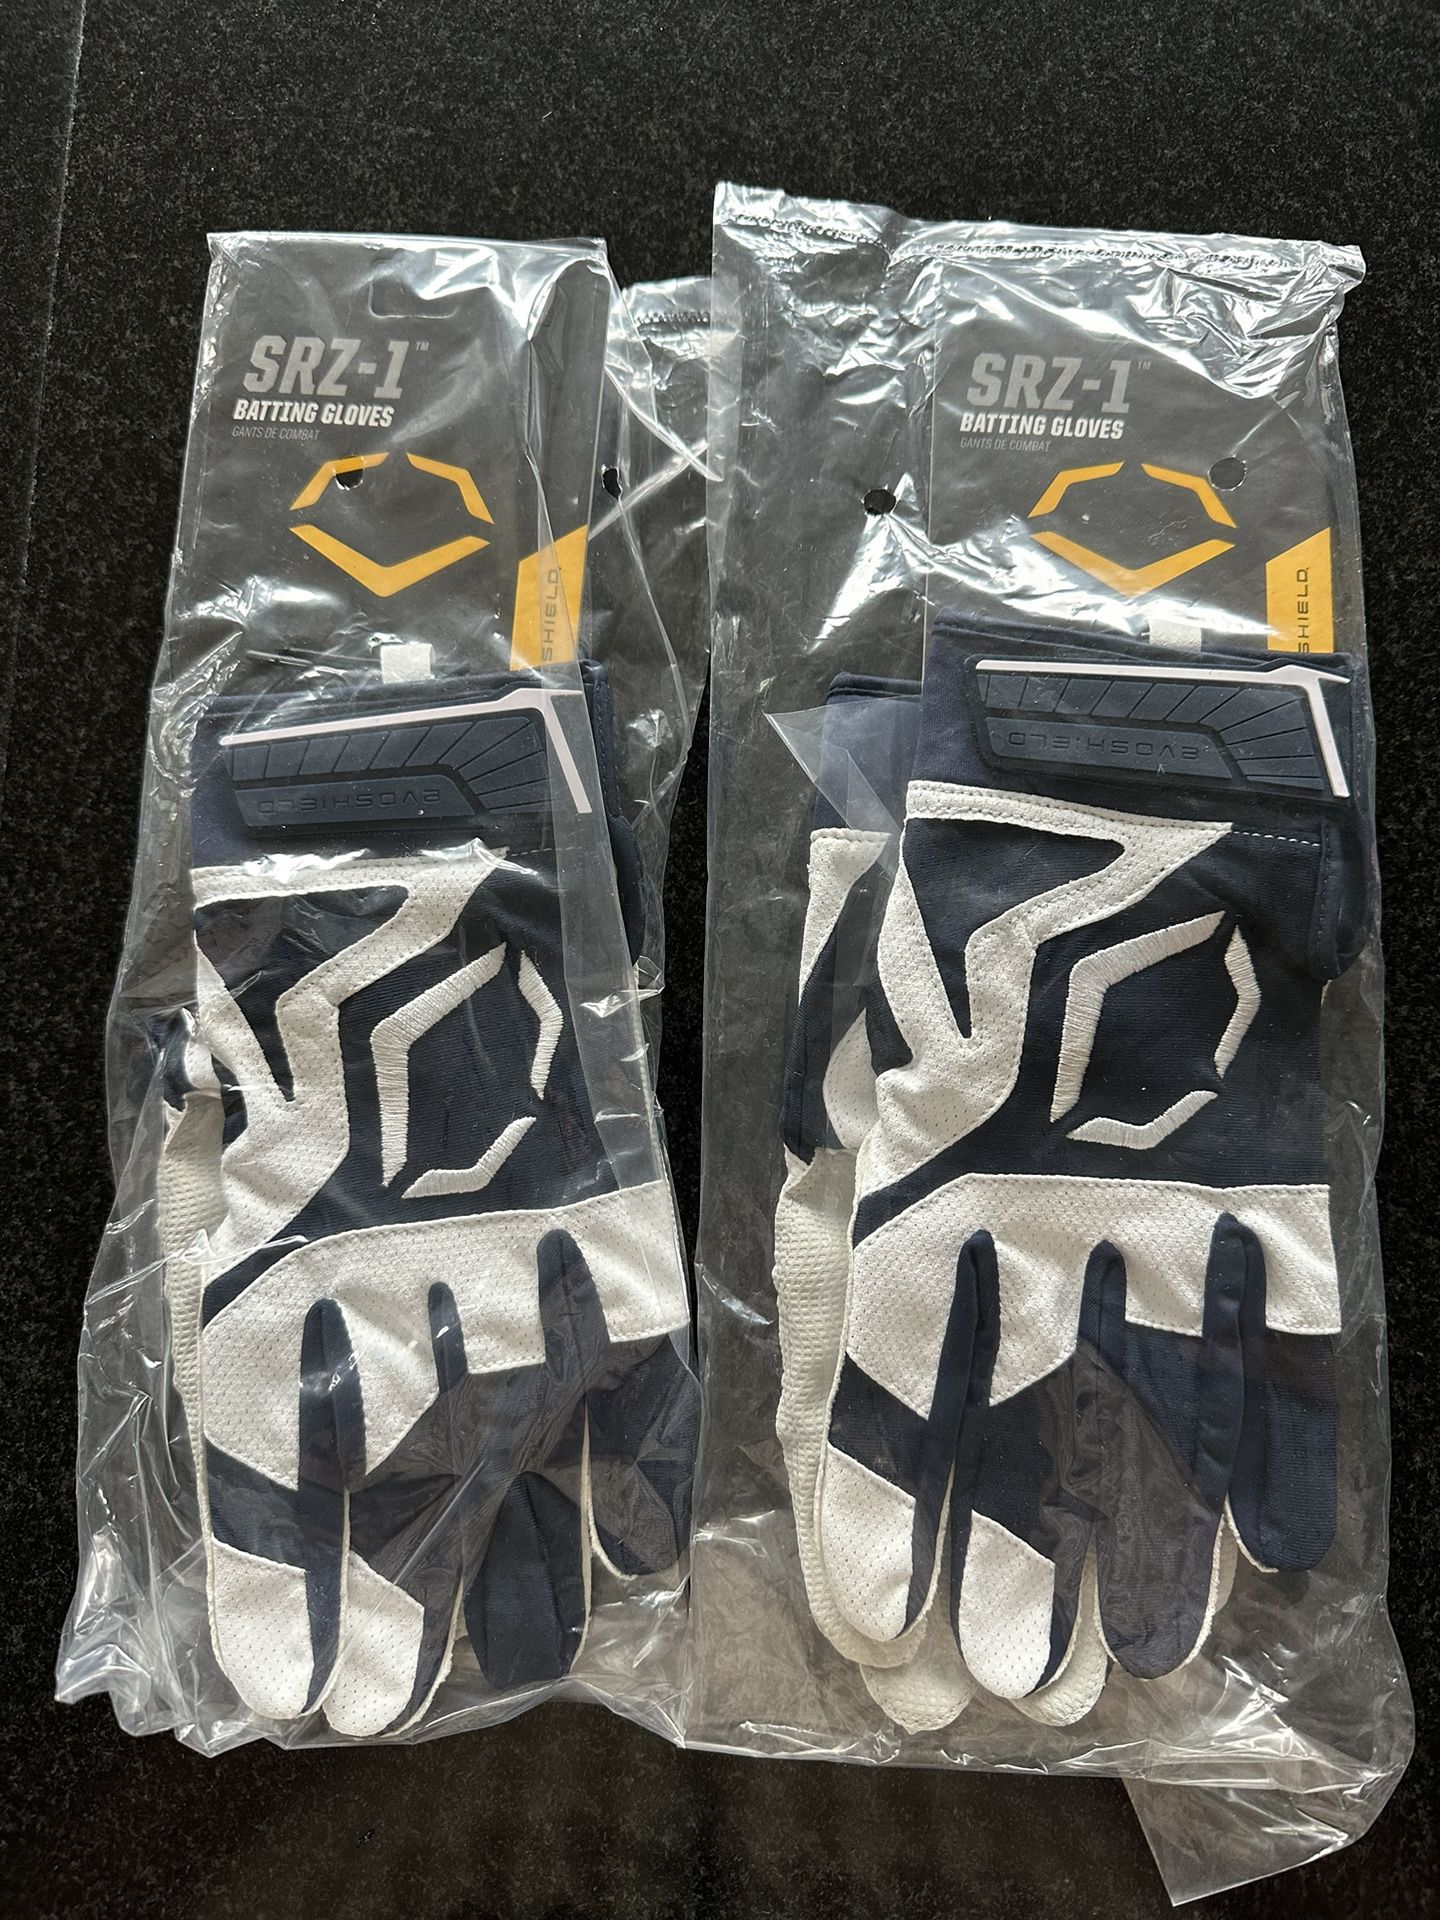 EvoShield SRZ-1™ Batting Gloves - Brand New